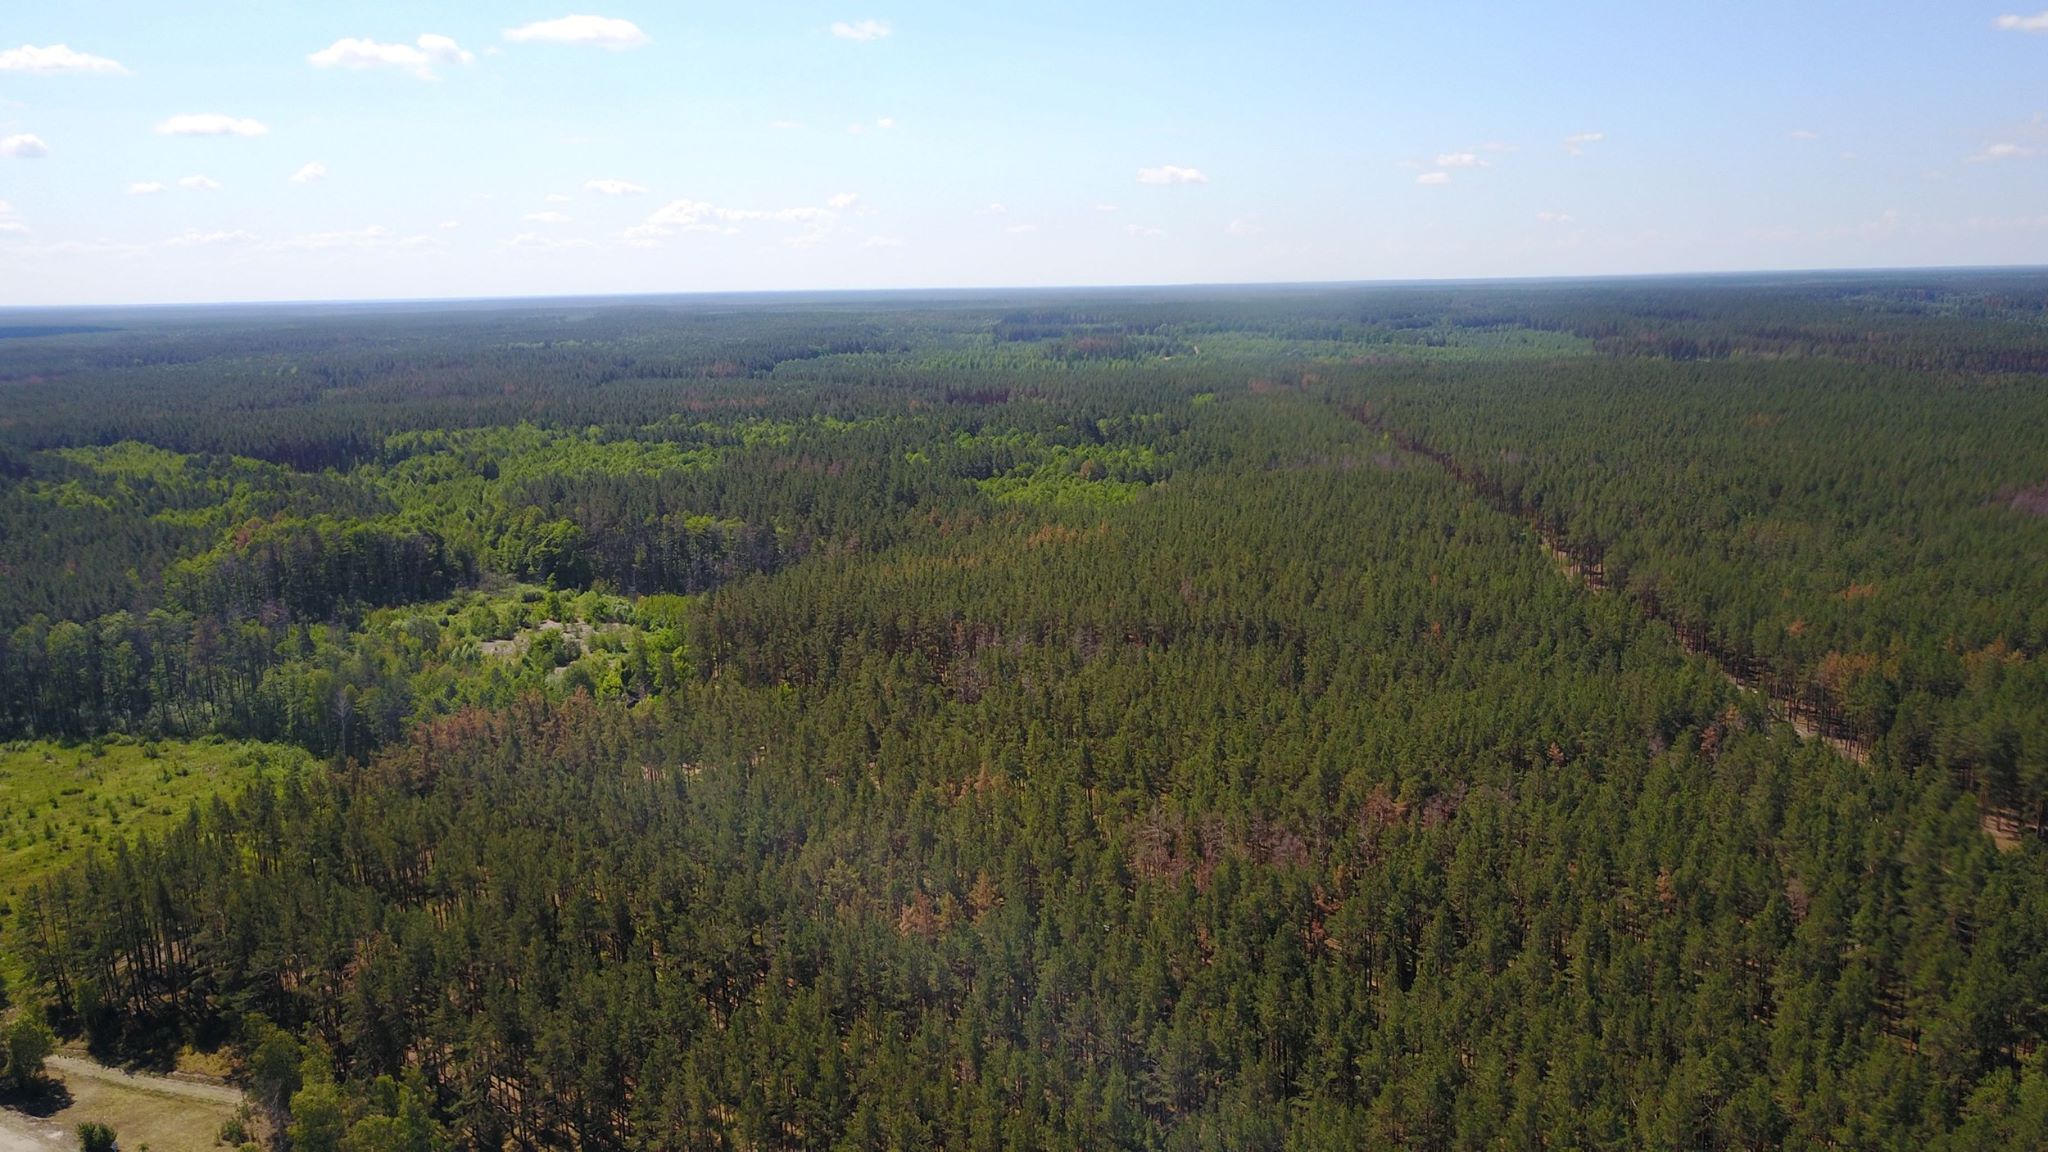 Отсутствие у Иванковского лесхоза документов на земельные участки привело к самозахвату более 200 га лесных земель, - Госаудитслужба